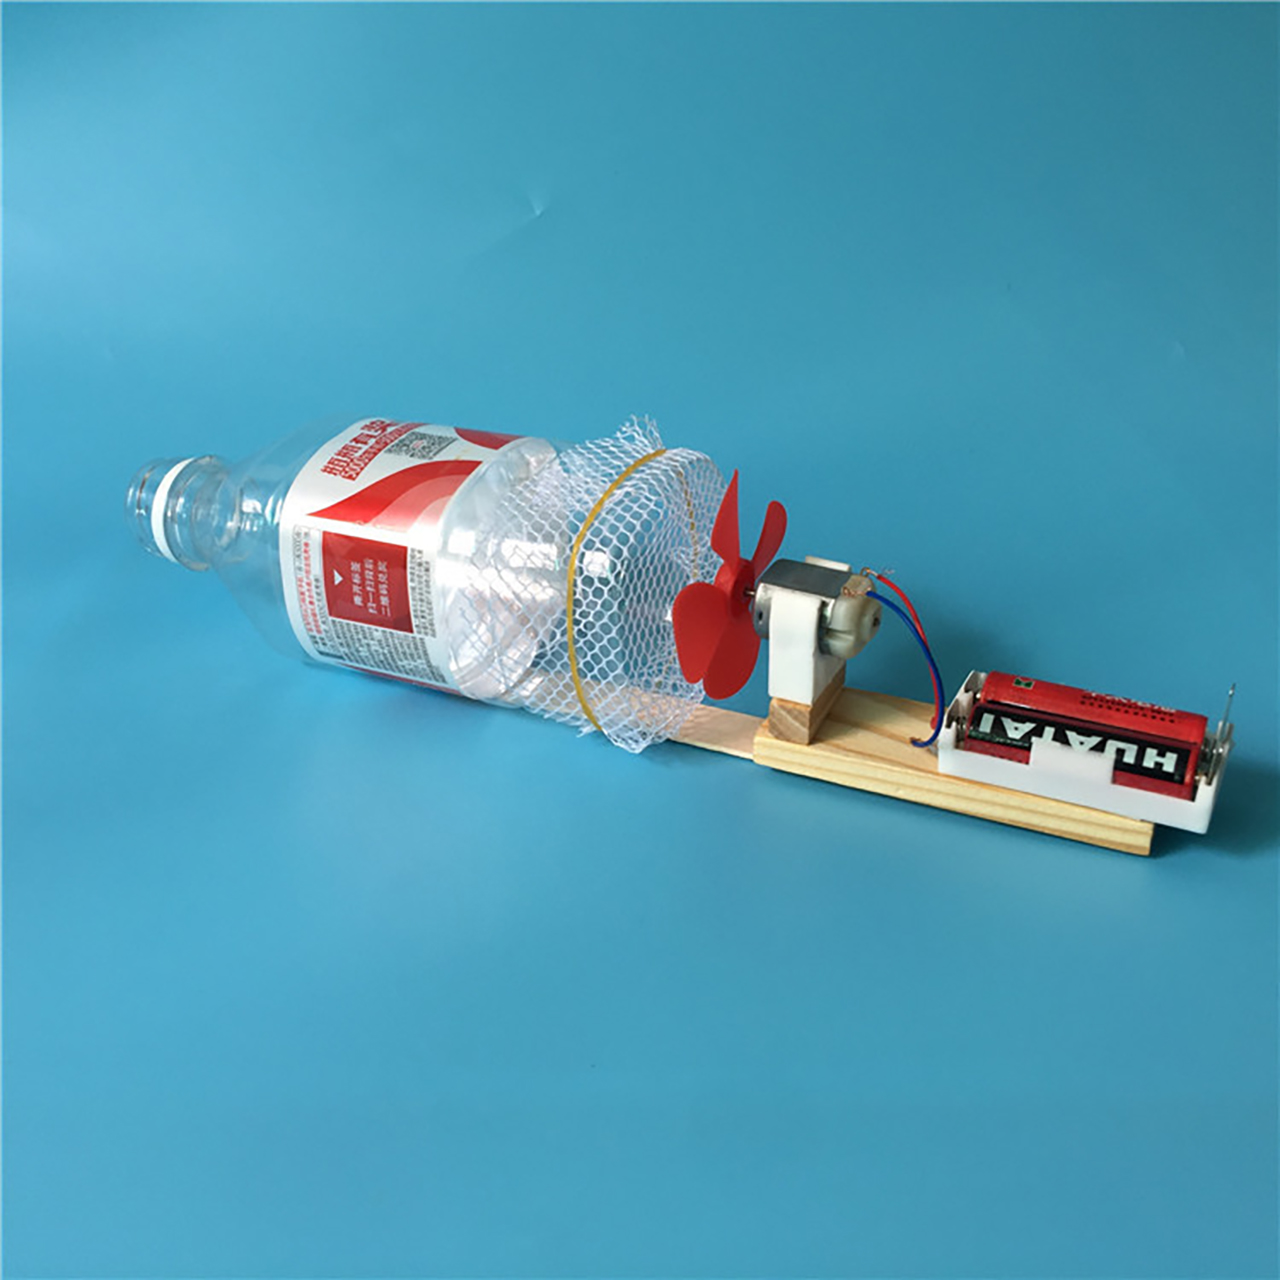 Đồ chơi trẻ em S17 thông minh sáng tạo STEM (STEAM) mô hình lắp ghép máy hút bụi tự chế bằng ống nhựa